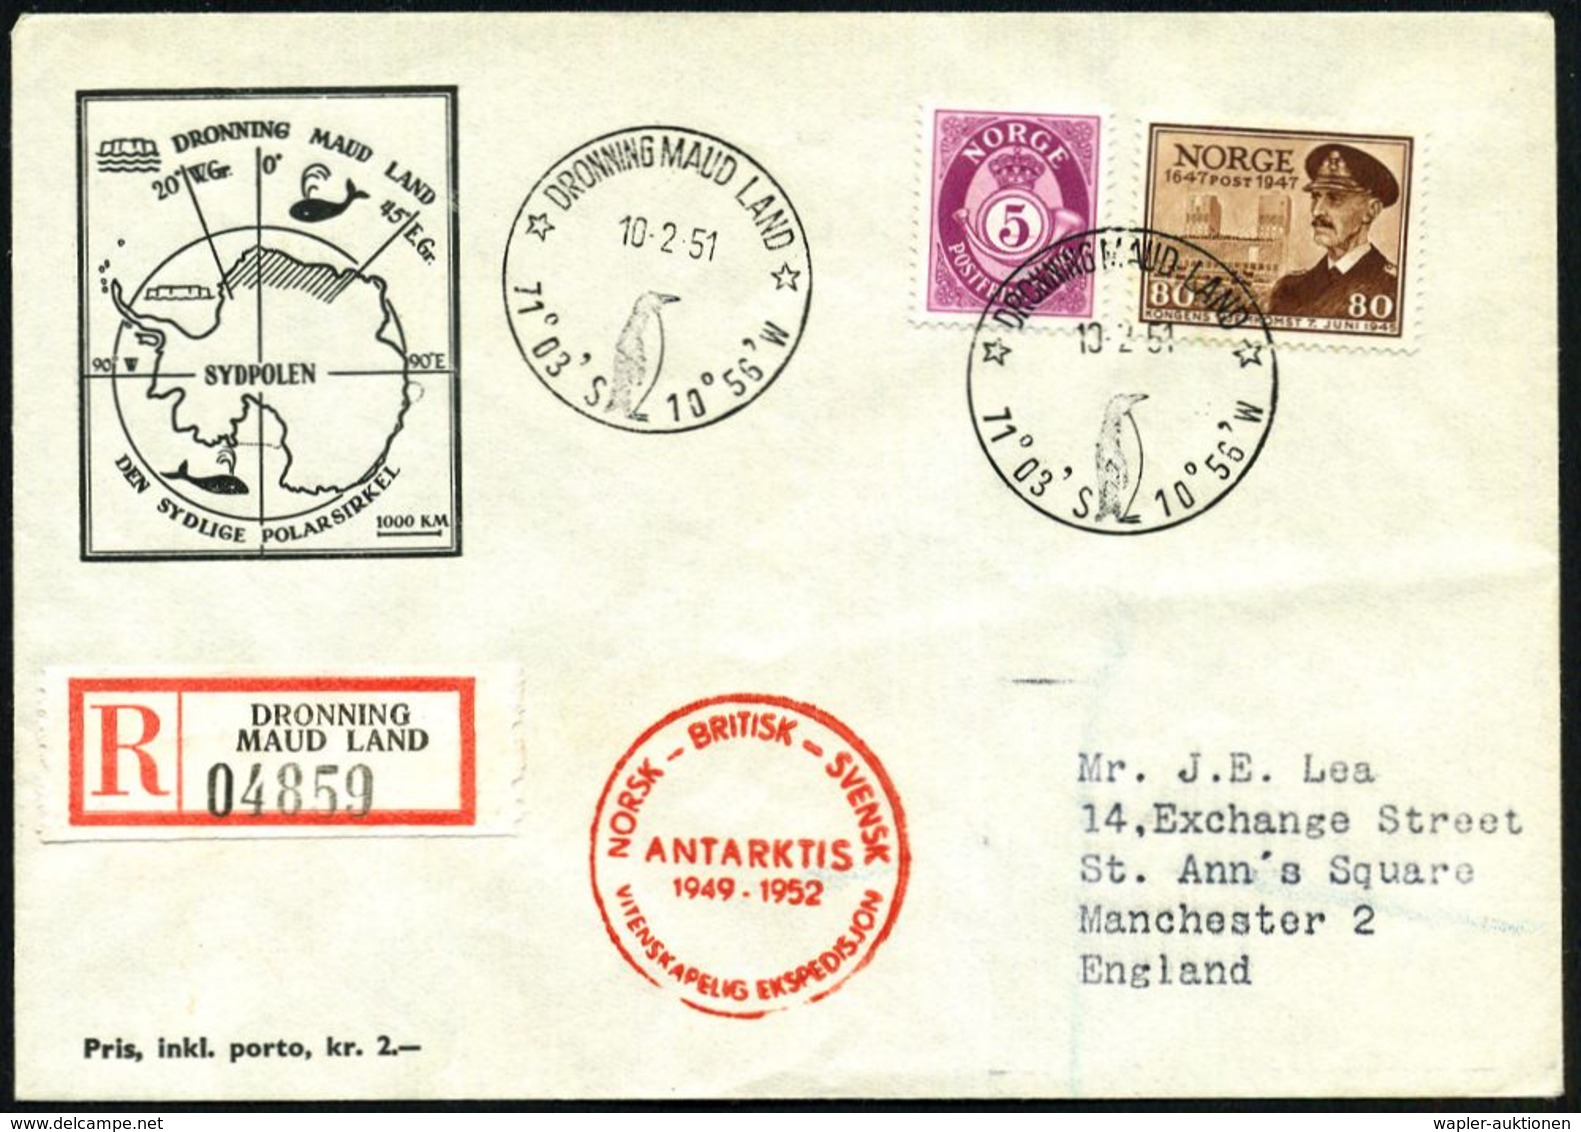 NORWEGEN /  GROSSBRIT. /  SCHWEDEN 1951 (10.2.) 1K-HWSt.: DRONNING MAUD LAND/71°03' S 10°56'W (Pinguin) + Seltener RZ: D - Spedizioni Antartiche